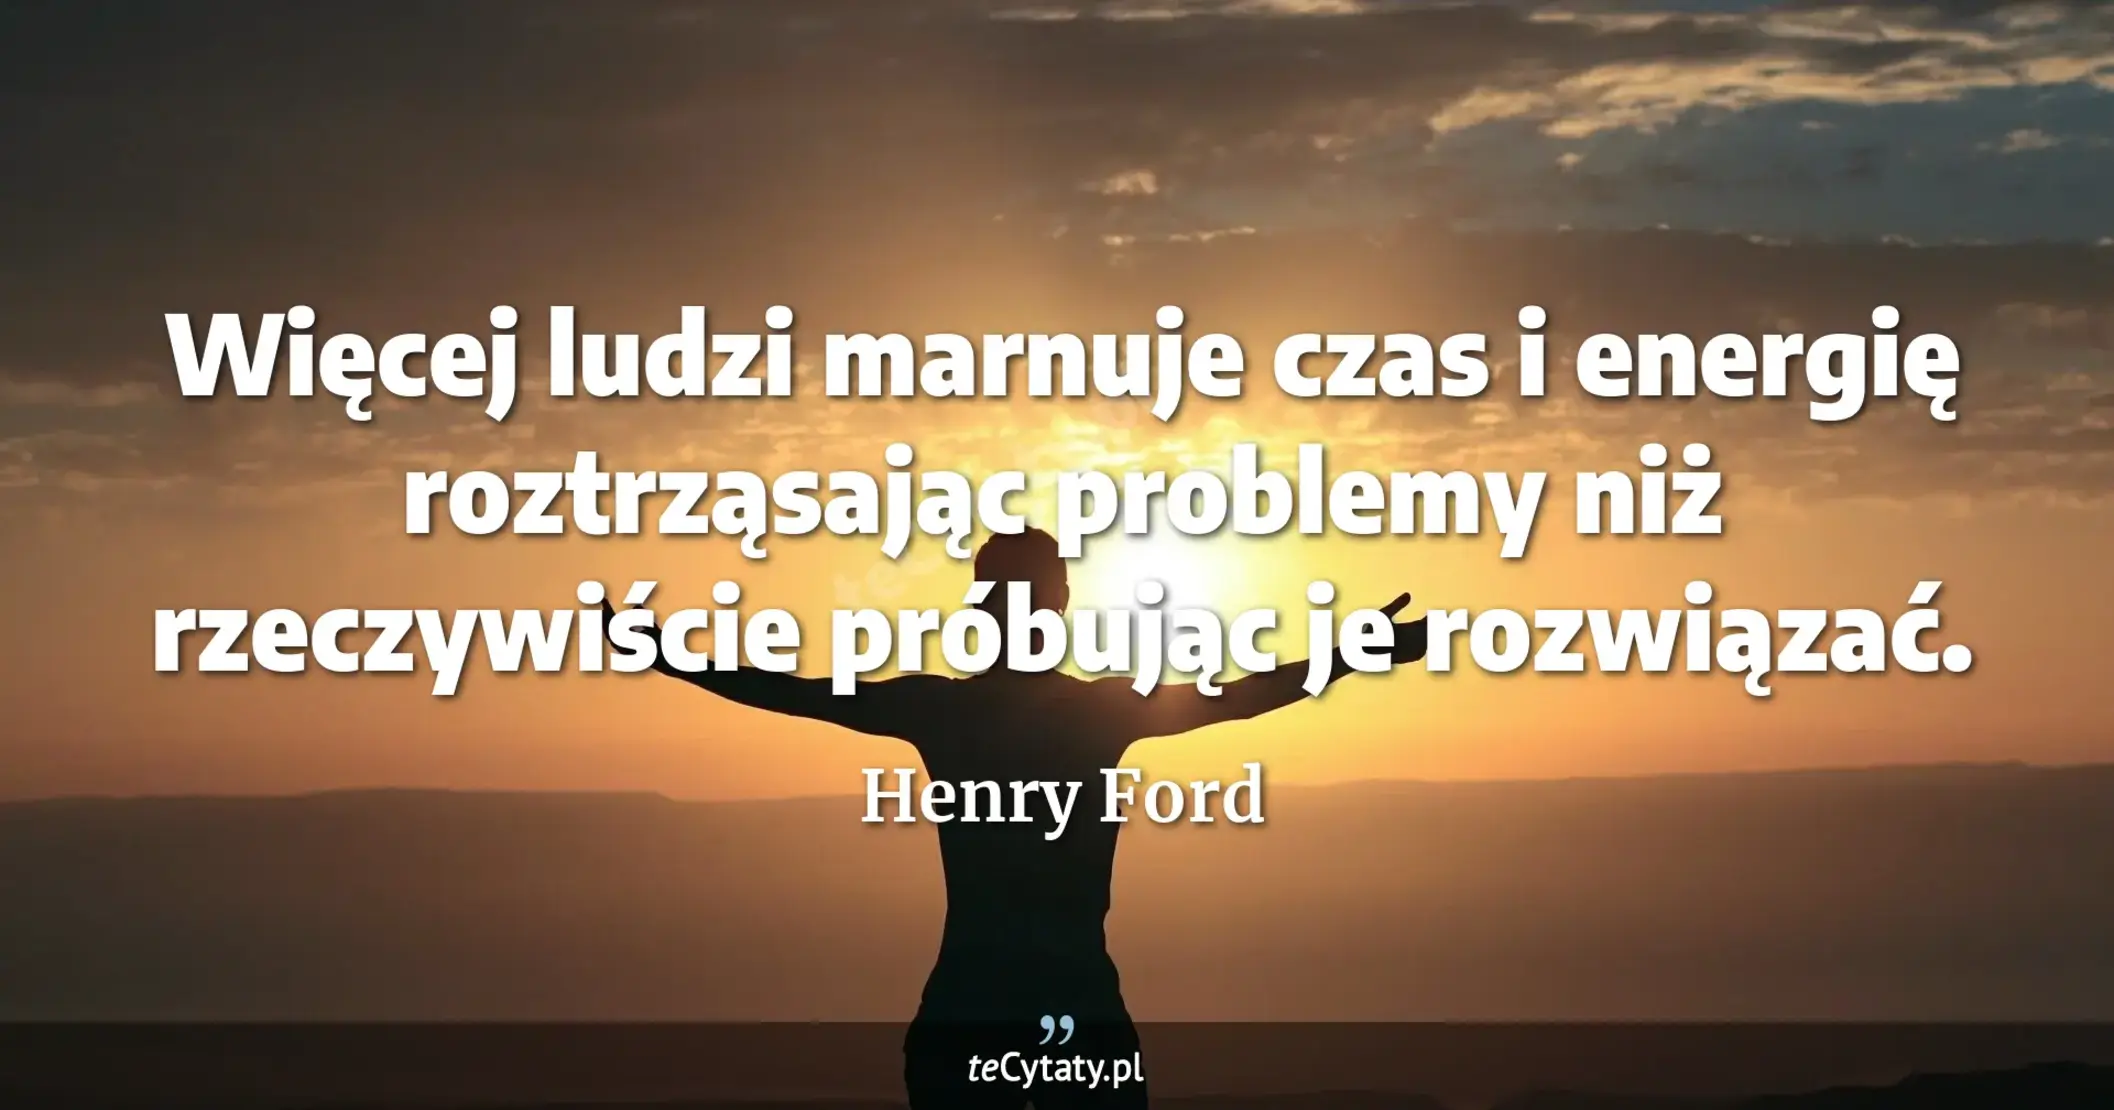 Więcej ludzi marnuje czas i energię roztrząsając problemy niż rzeczywiście próbując je rozwiązać. - Henry Ford